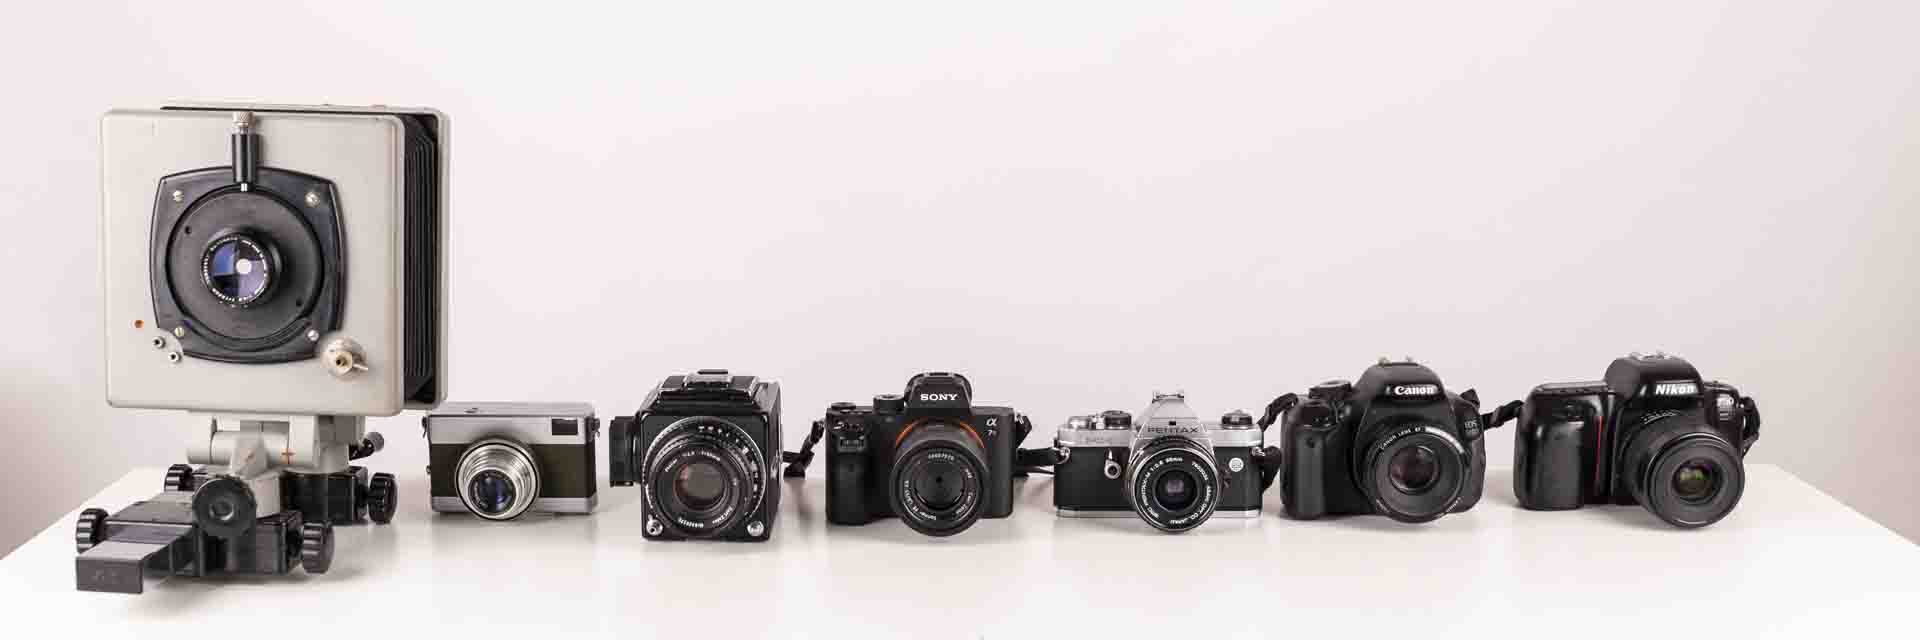 Macchine fotografiche professionali, guida alla scelta